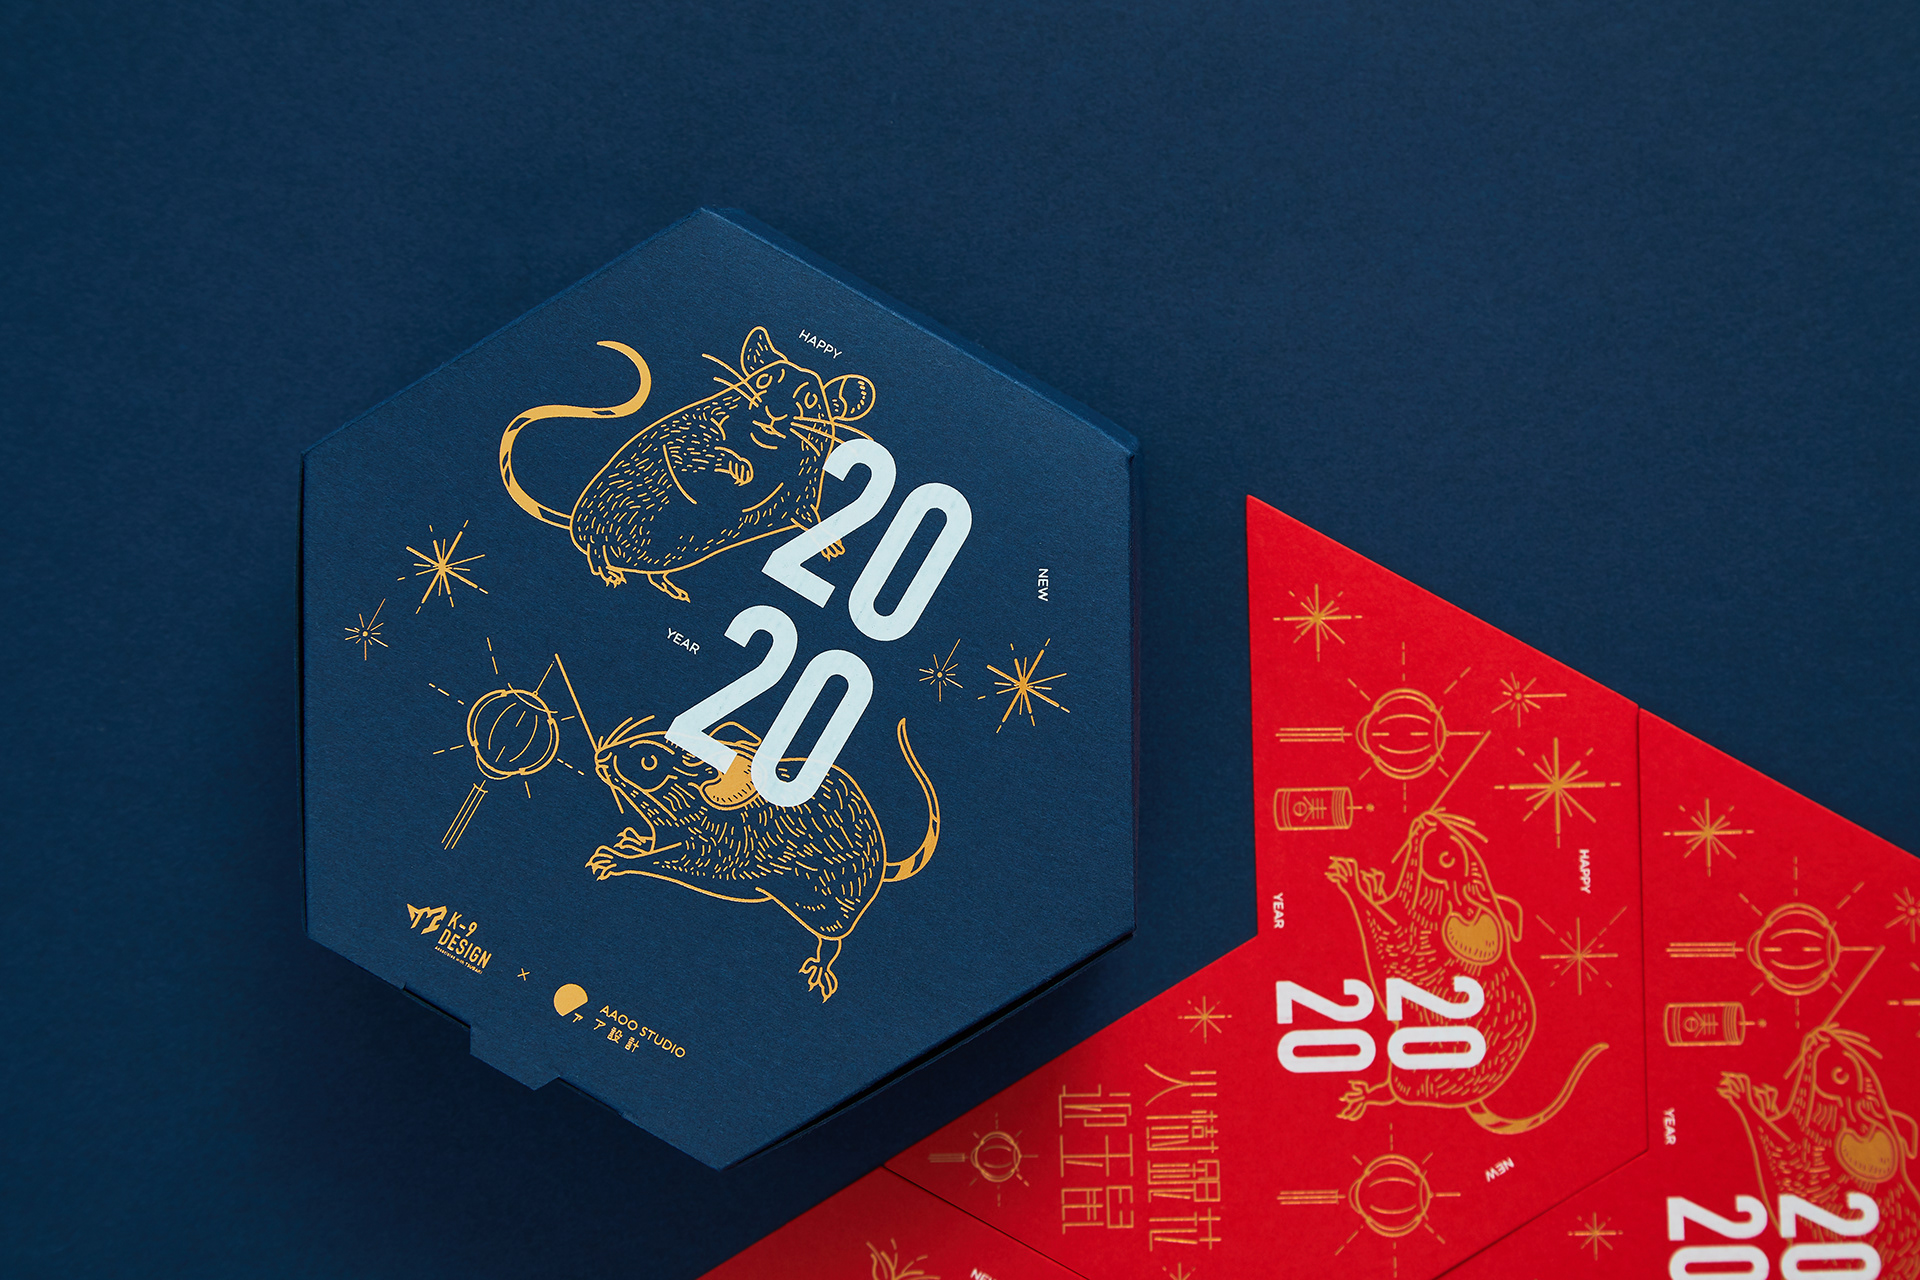 2020銀花玉鼠盒 Chinese New Year Gift Box